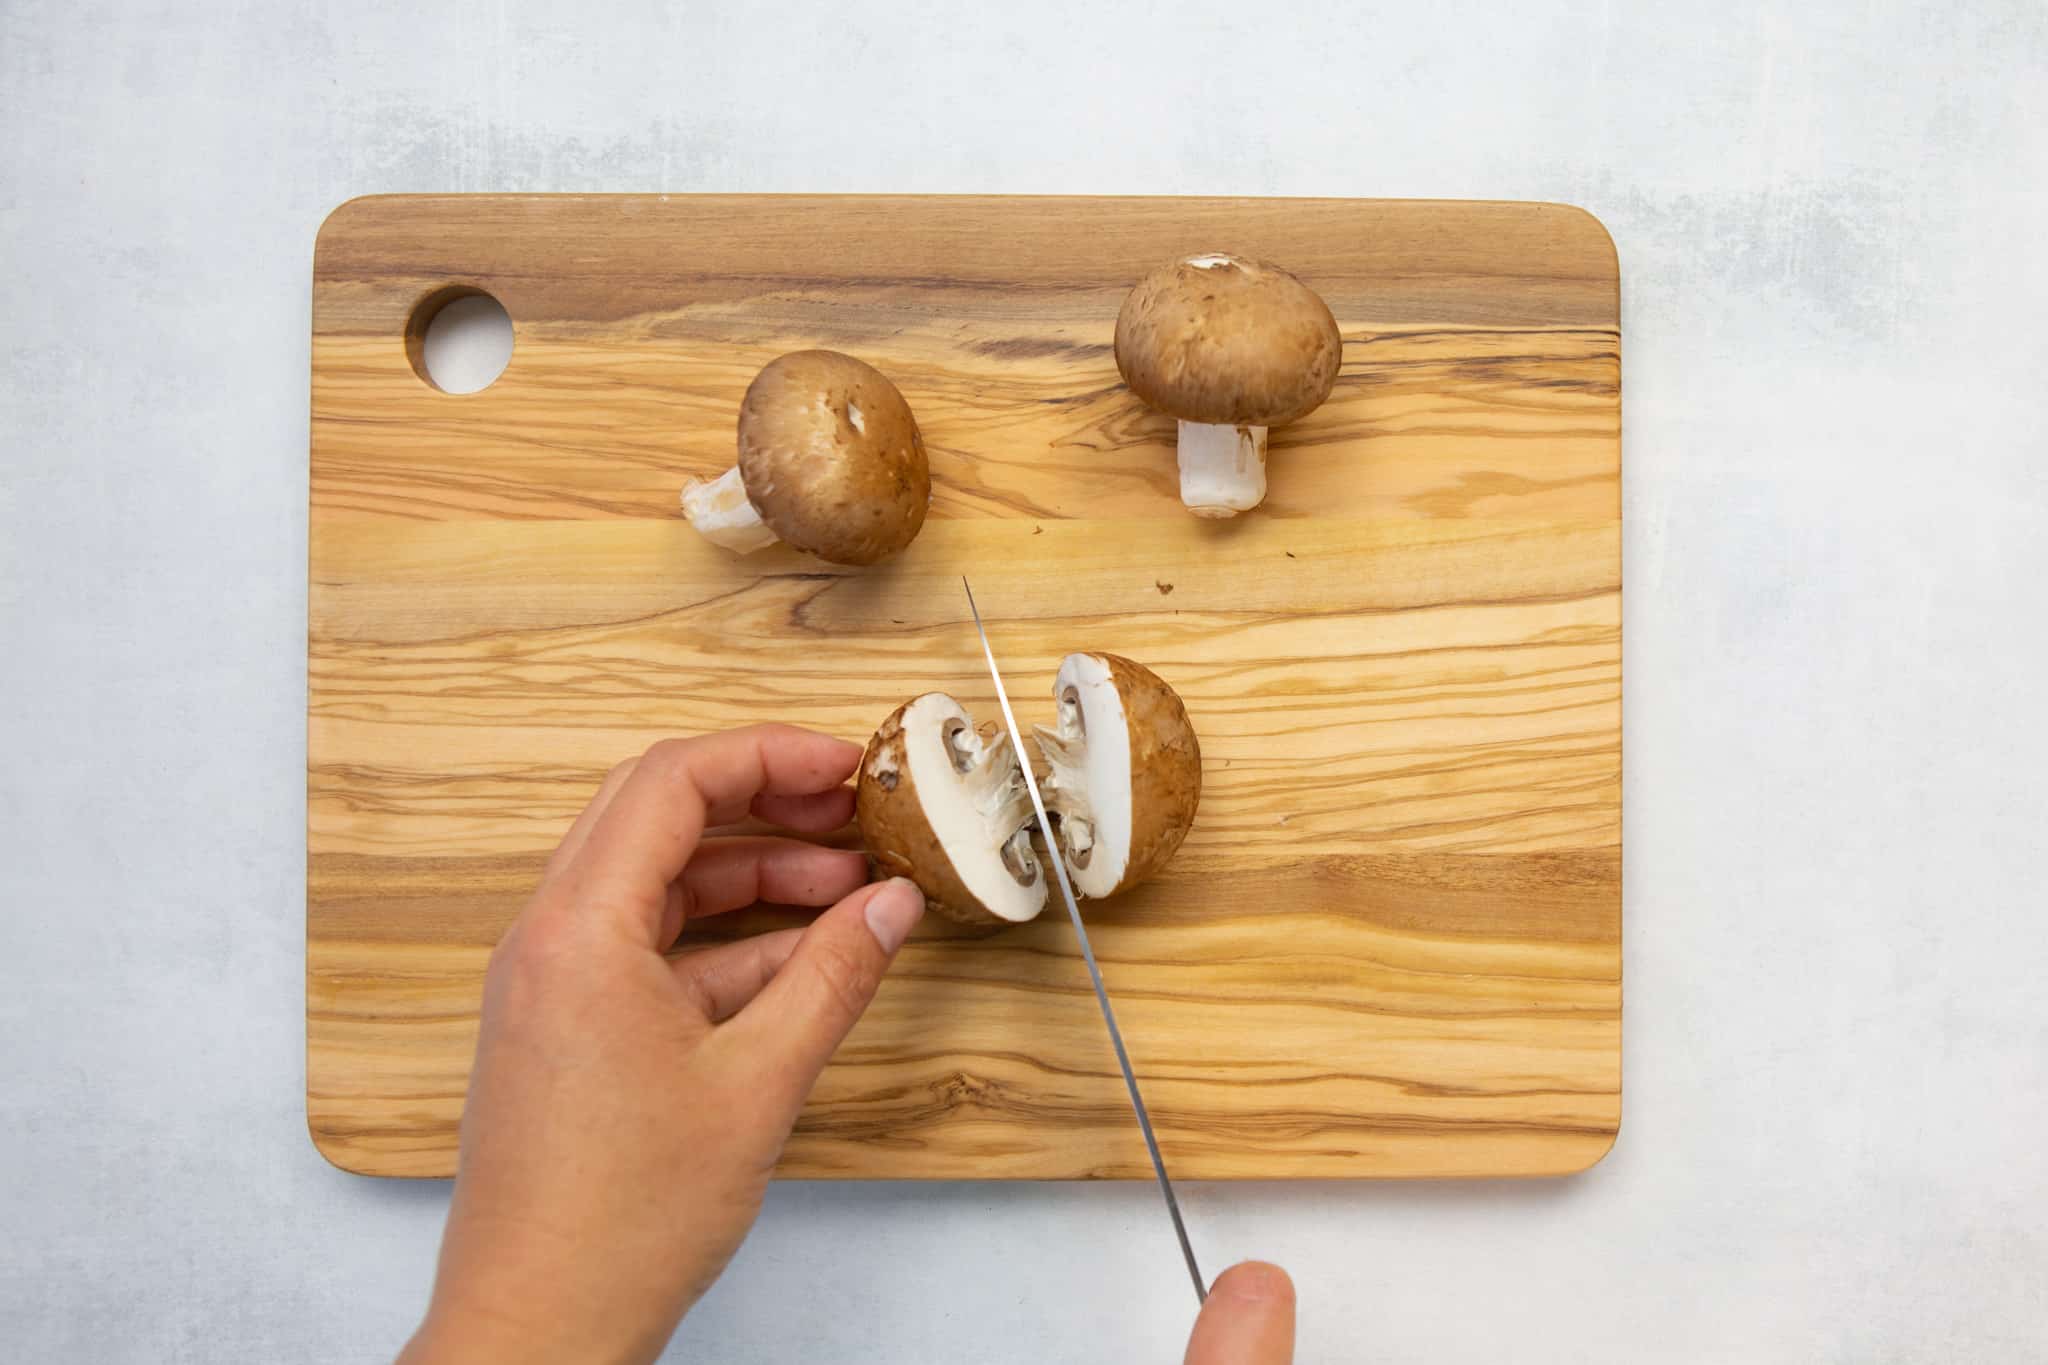 slice mushrooms in half